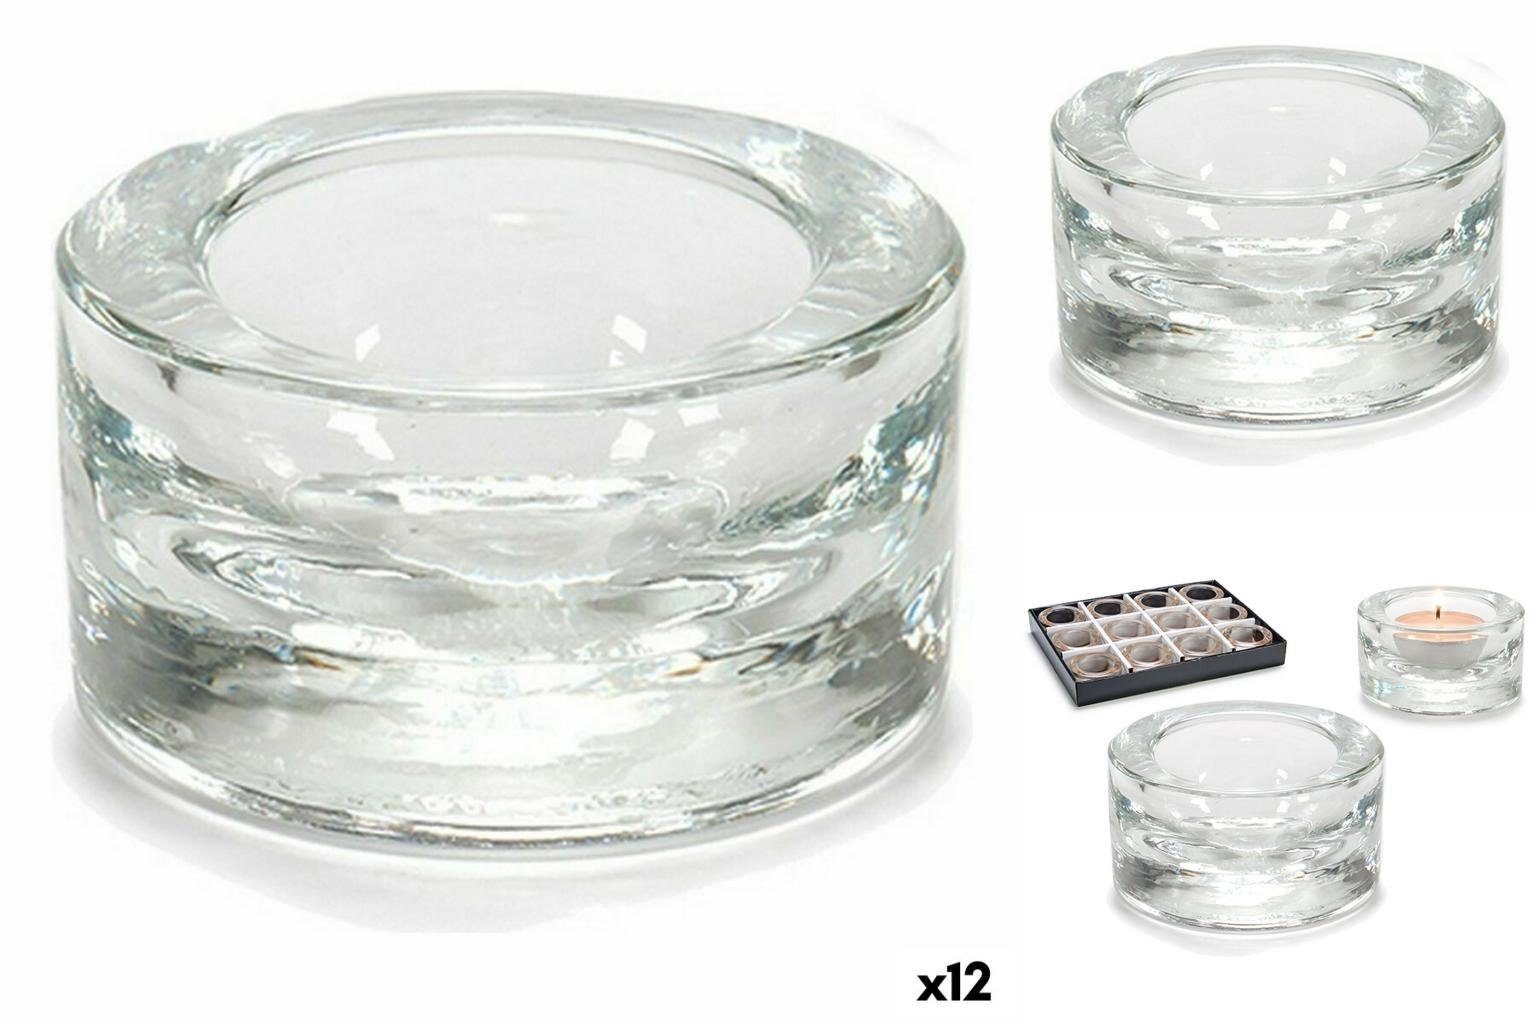 Gift Decor Windlicht Kerzenschale Durchsichtig Glas 7 x 3,5 x 7 cm 12 Stück